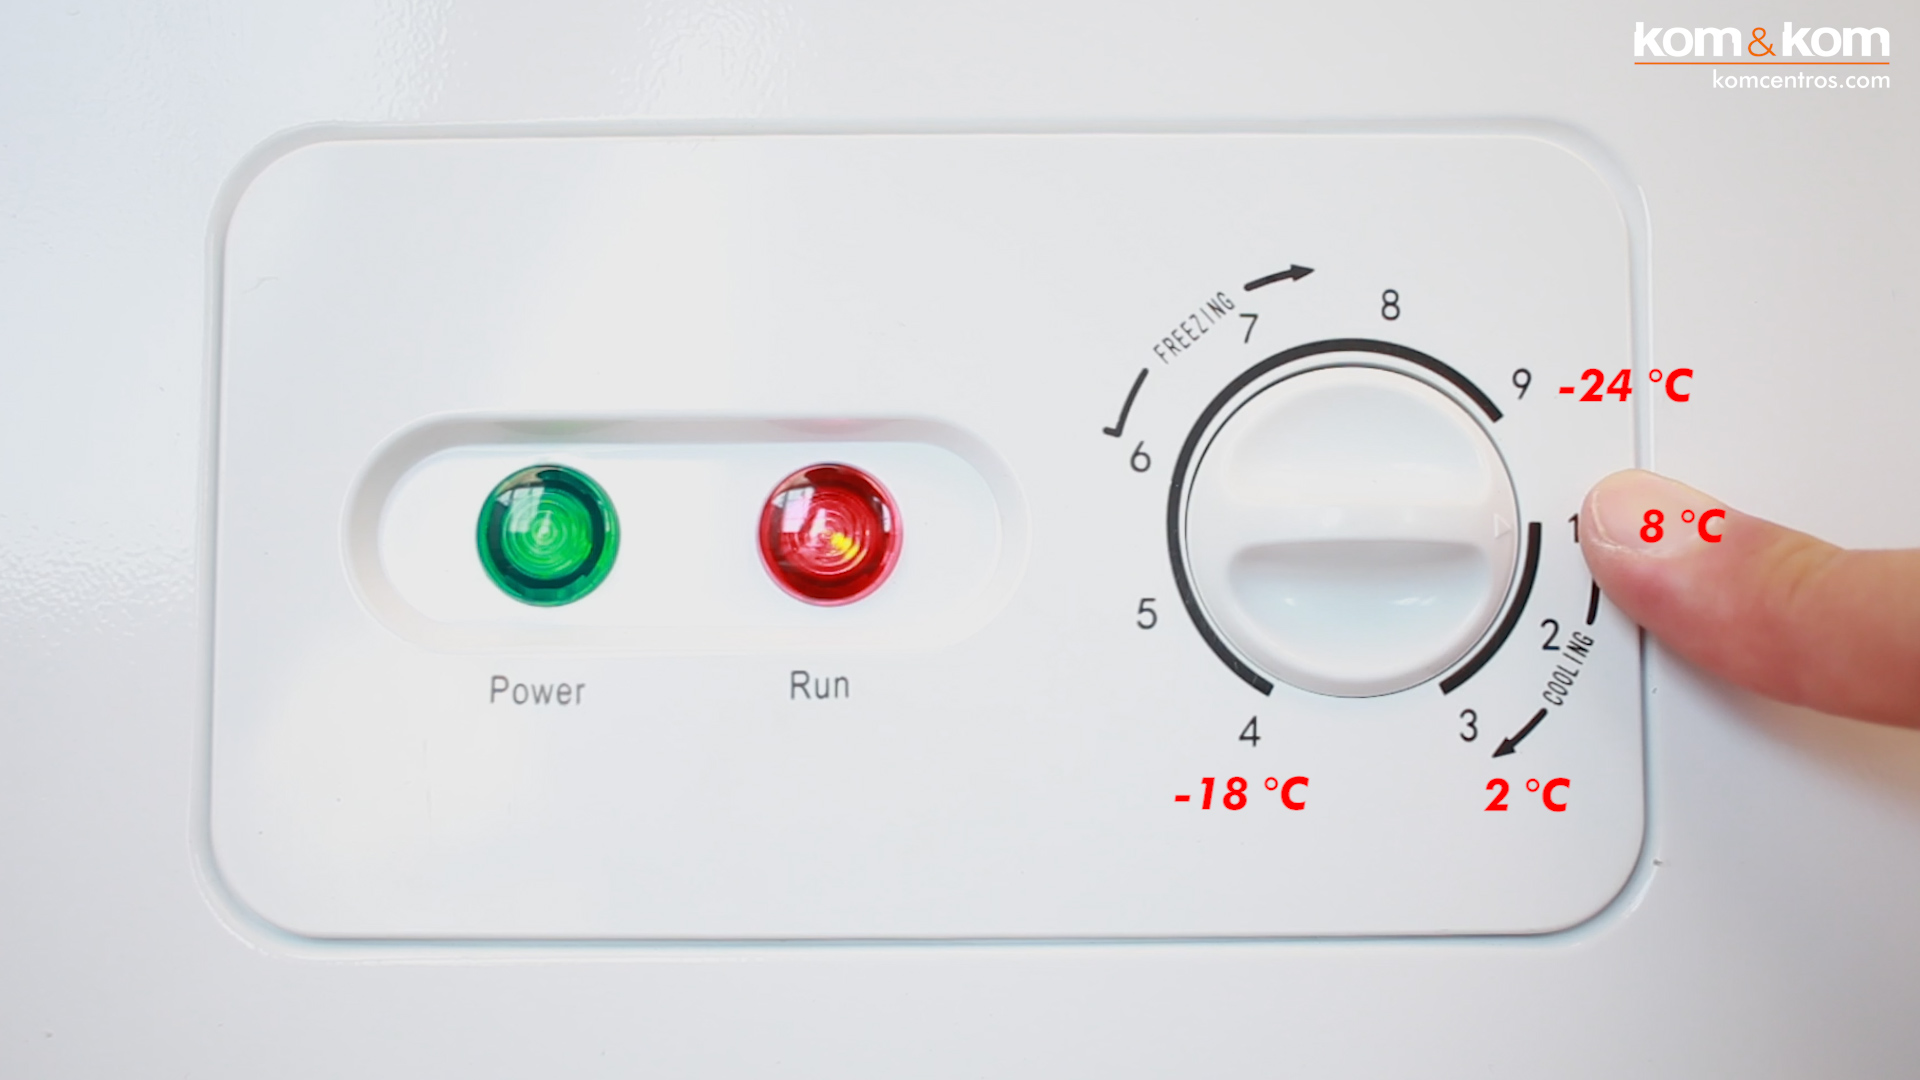 Panel de control de temperatura de congelaror horizontal EAS Electric